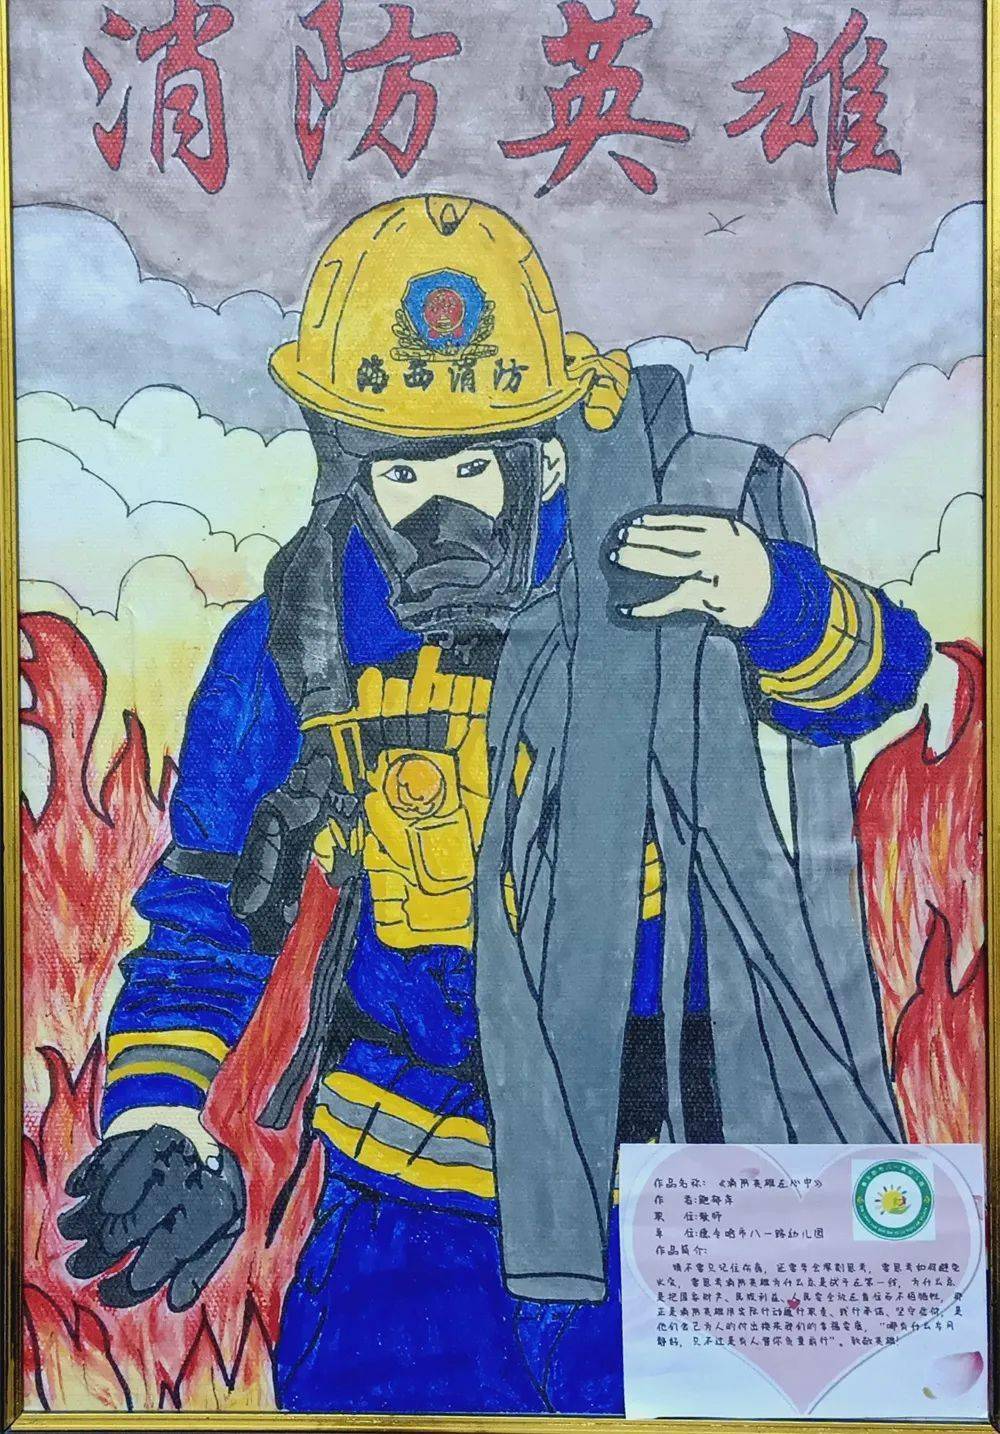 119消防宣传月海西州中小学消防绘画作品评比展览活动网上投票开始啦